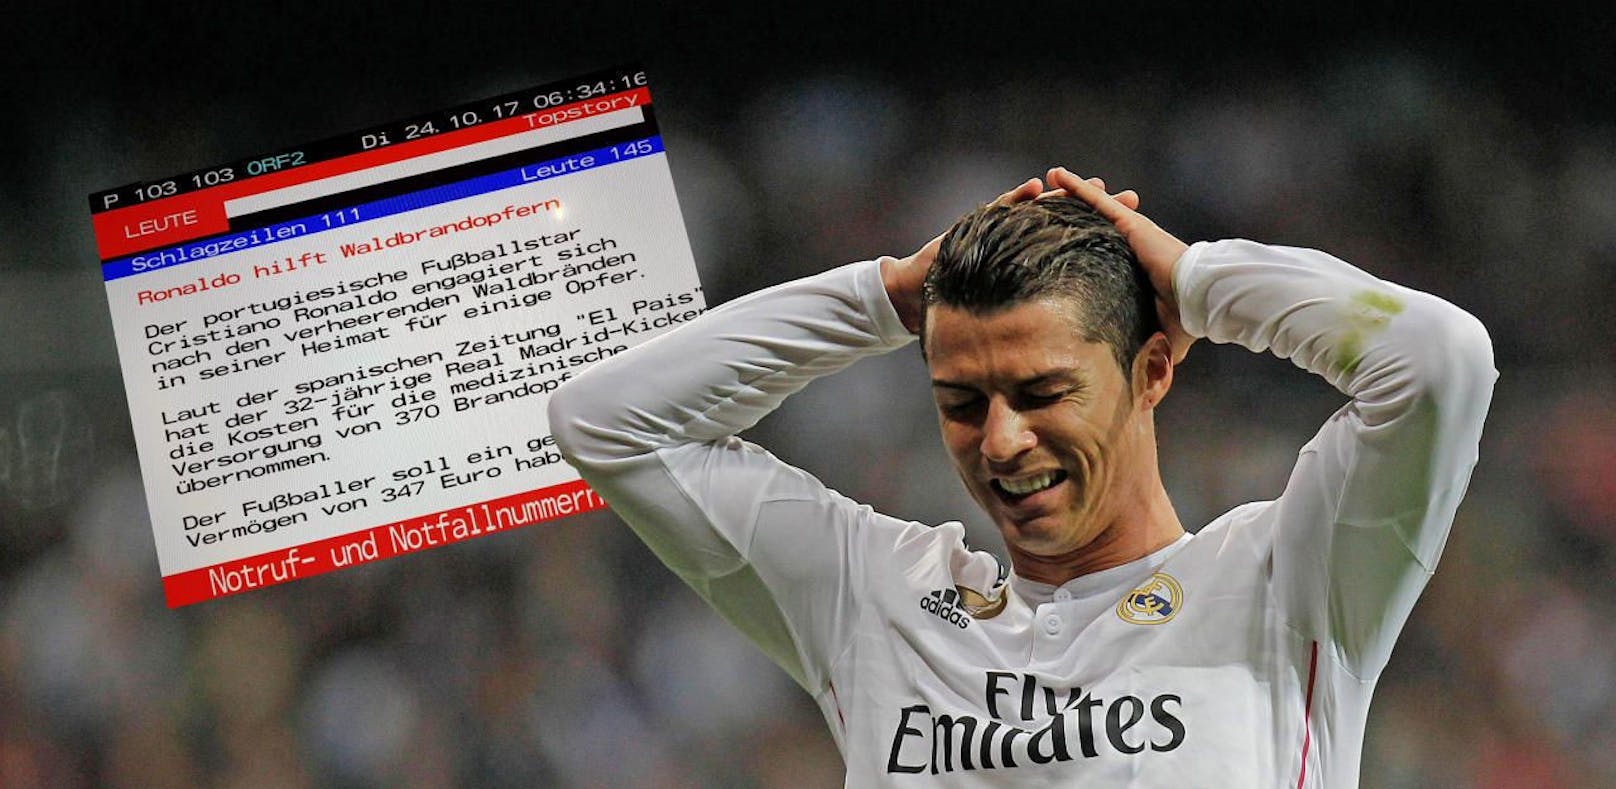 Im Teletext wird Ronaldos Vermögen auf &quot;347 Euro&quot; geschätzt.